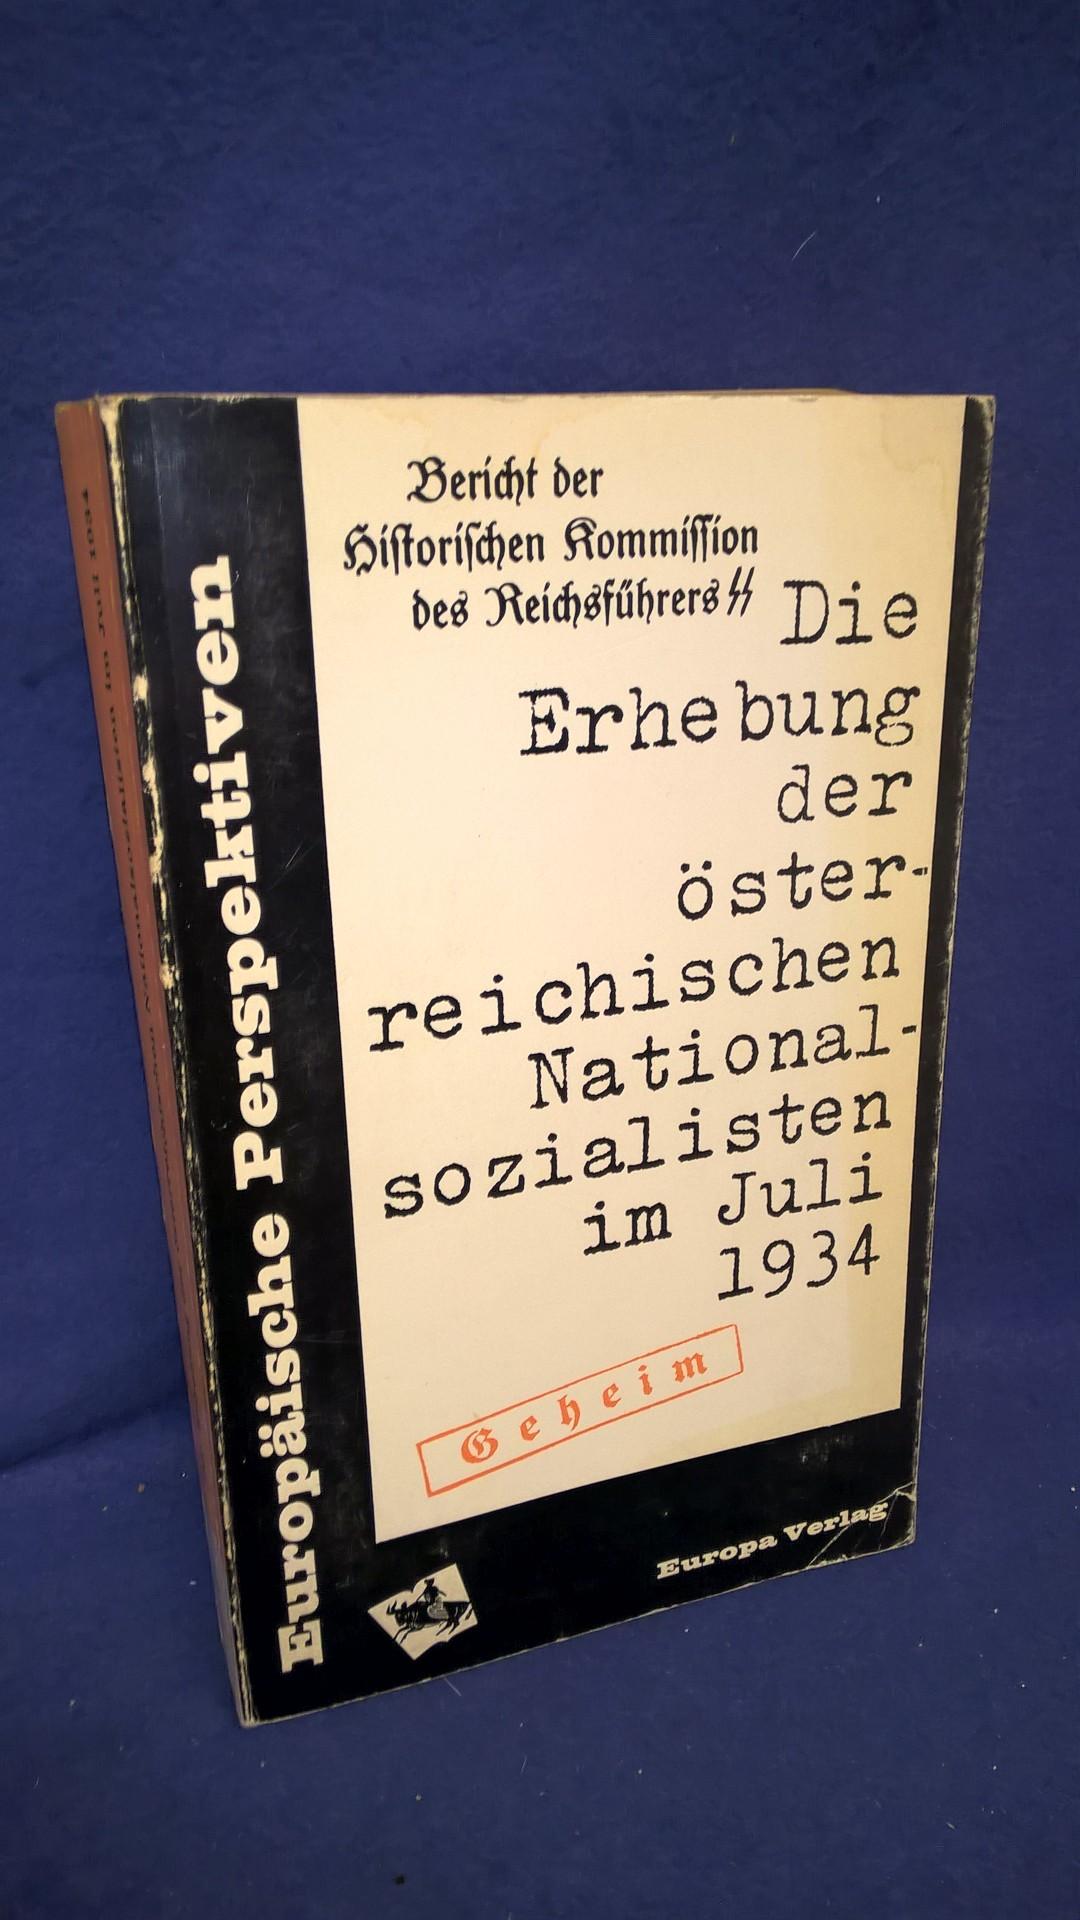 Die Erhebung der österreichischen Nationalsozialisten im Juli 1934 (Akten der Historischen Kommission des Reichsführers SS)